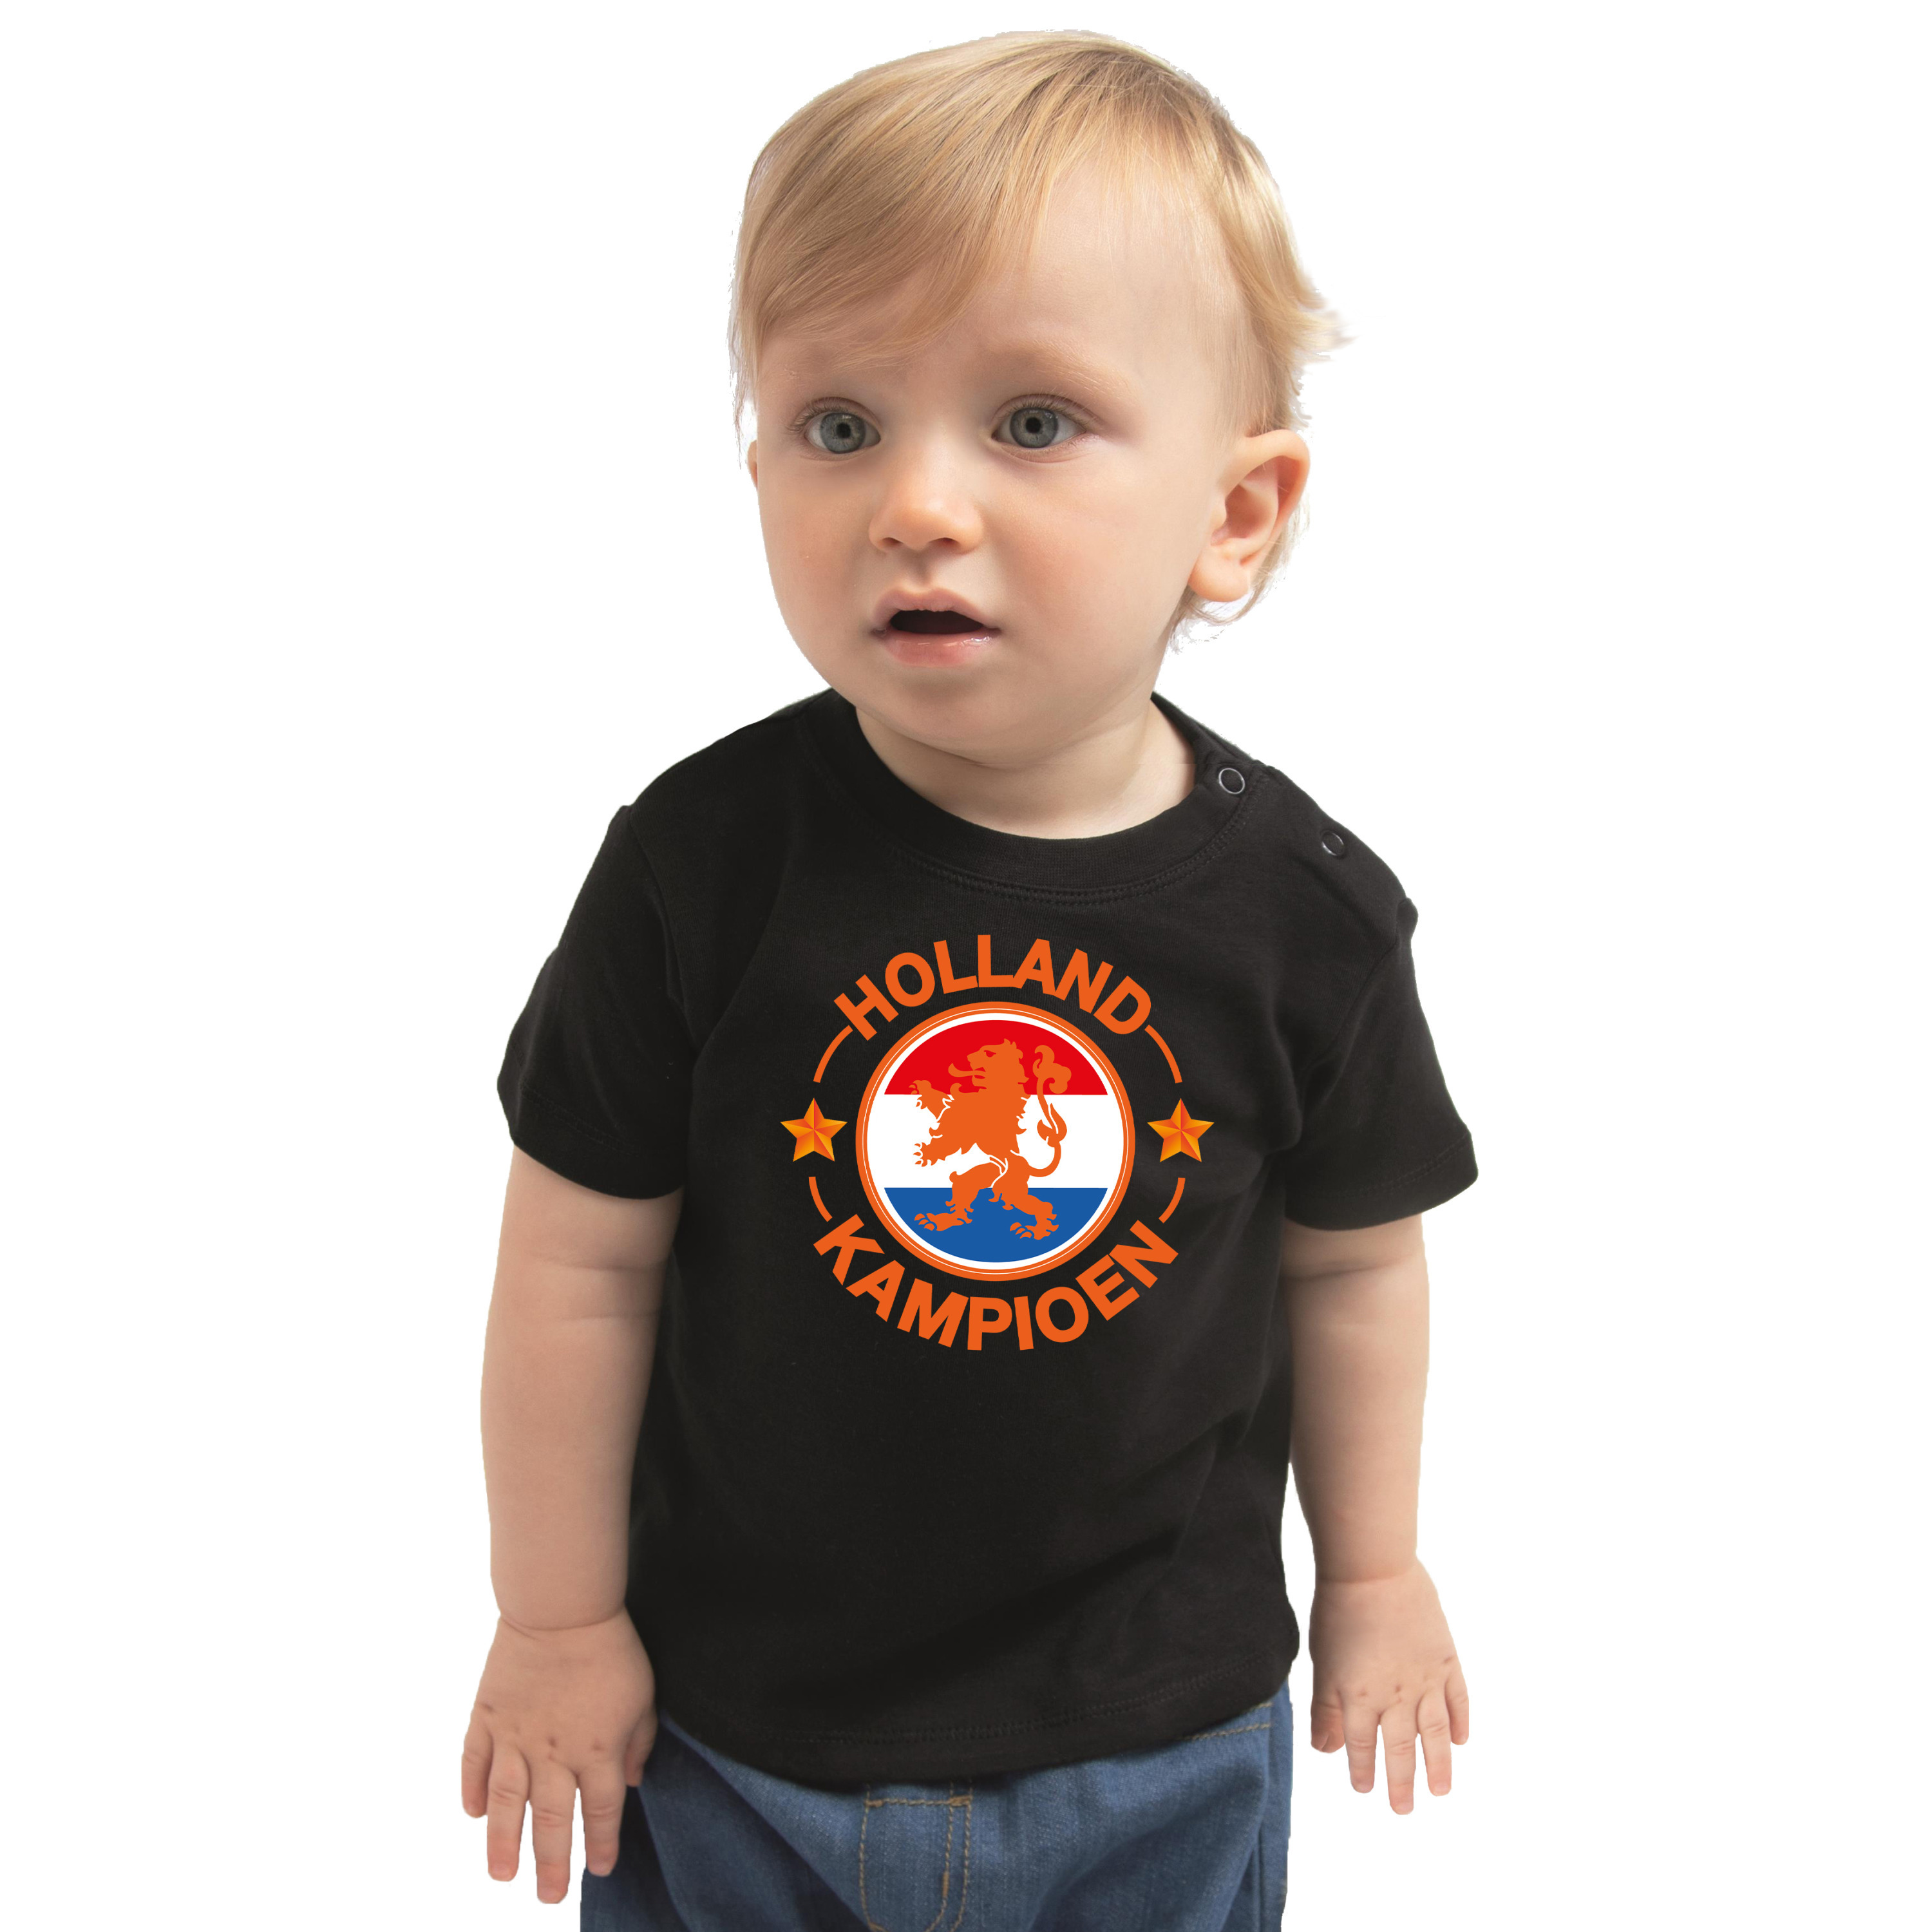 Zwart t-shirt Holland kampioen met leeuw voor babys Nederland supporter